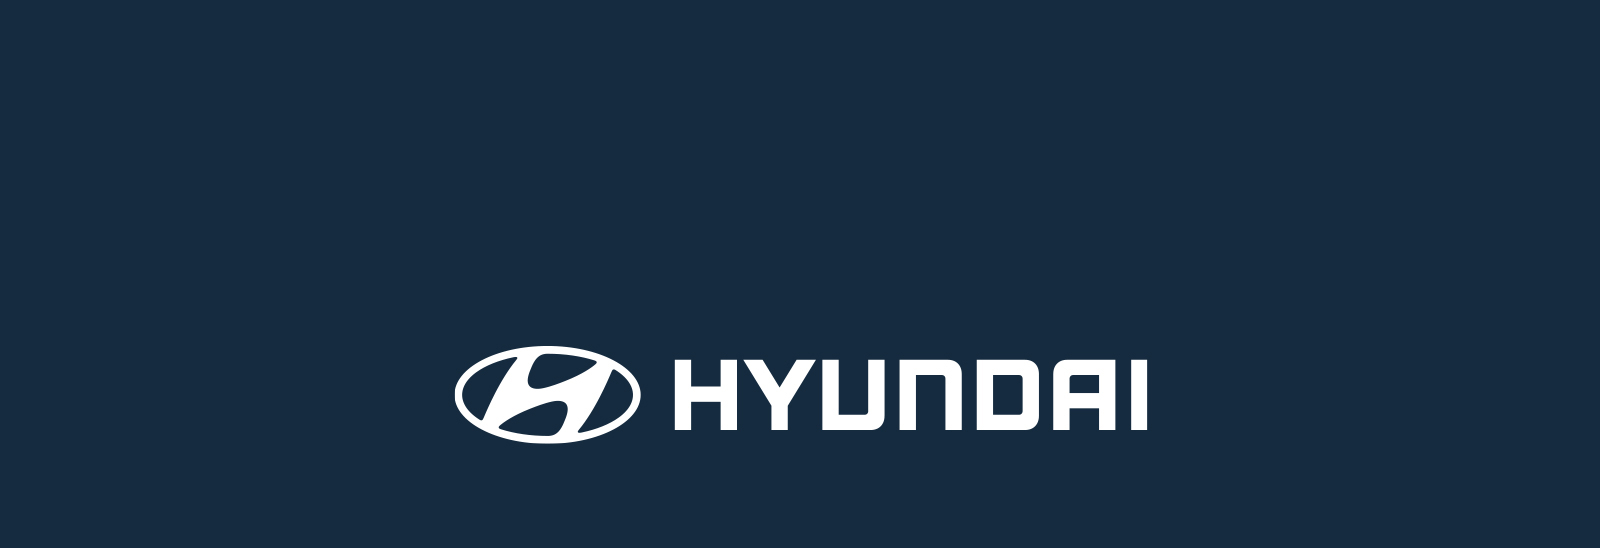 Logo Hyundai en blanco sobre fondo azul